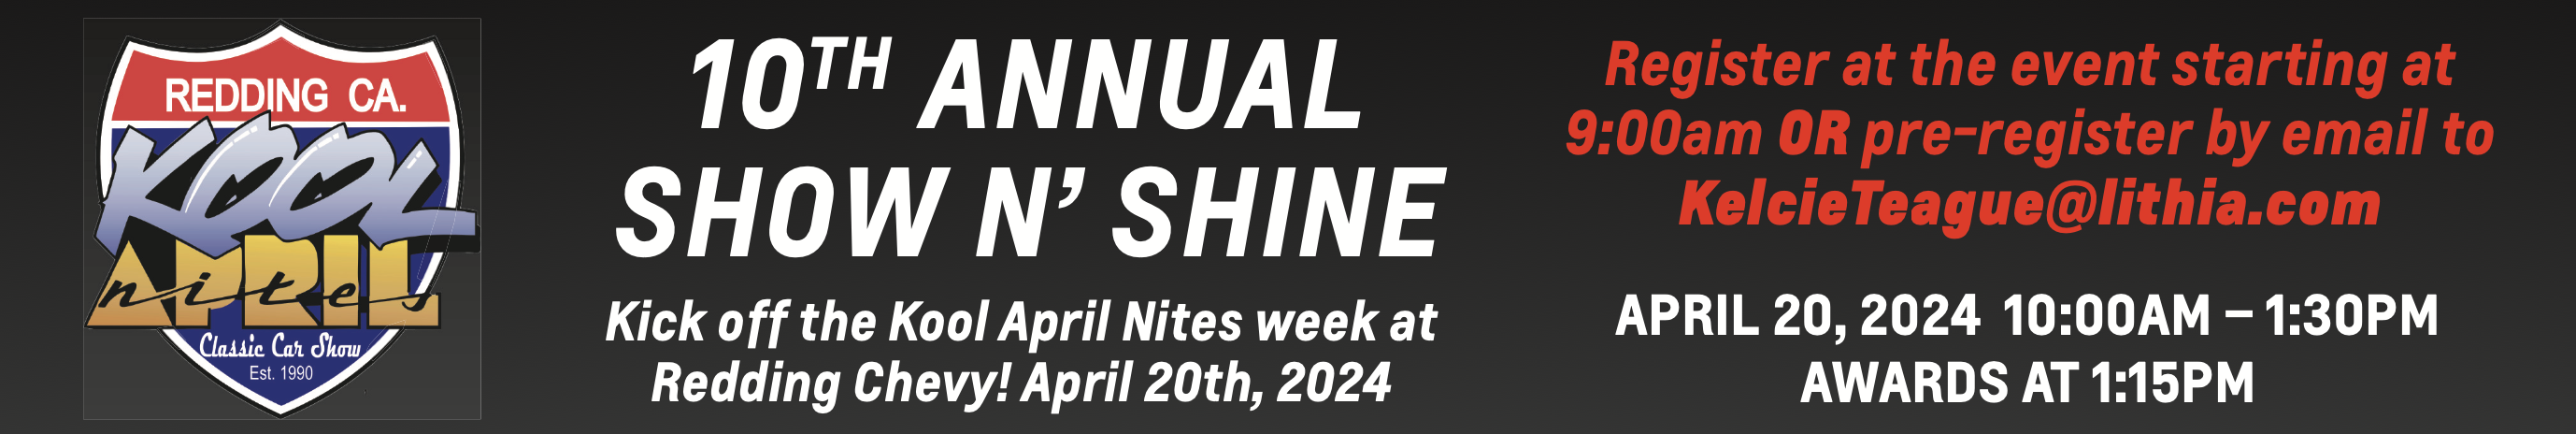 Show N Shine Annual Event